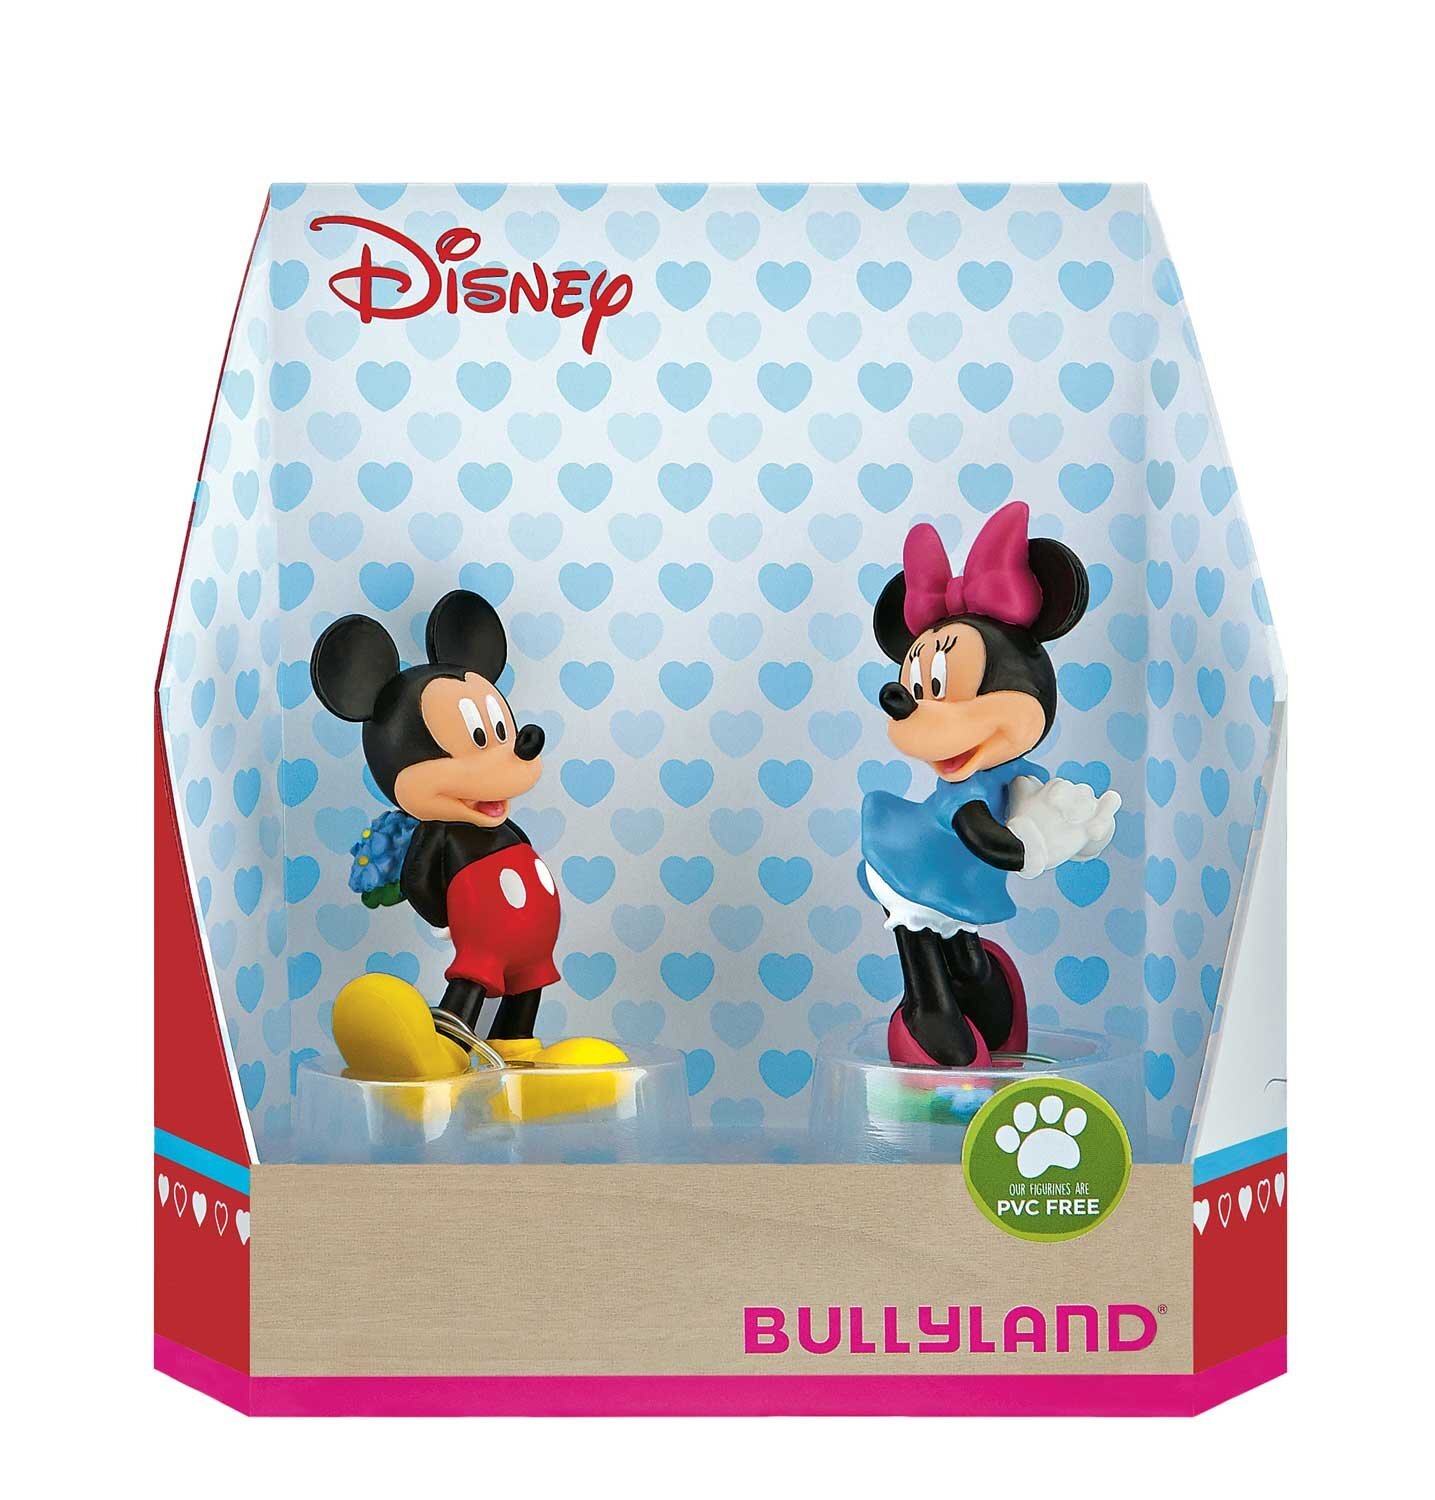 Bullyland 15077 - speelfigurenset, Walt Disney Mickey Valentine - Mickey en Minnie, liefdevol met de hand geschilderde figuren, PVC-vrij, leuk cadeau voor jongens en meisjes om fantasierijk te spelen